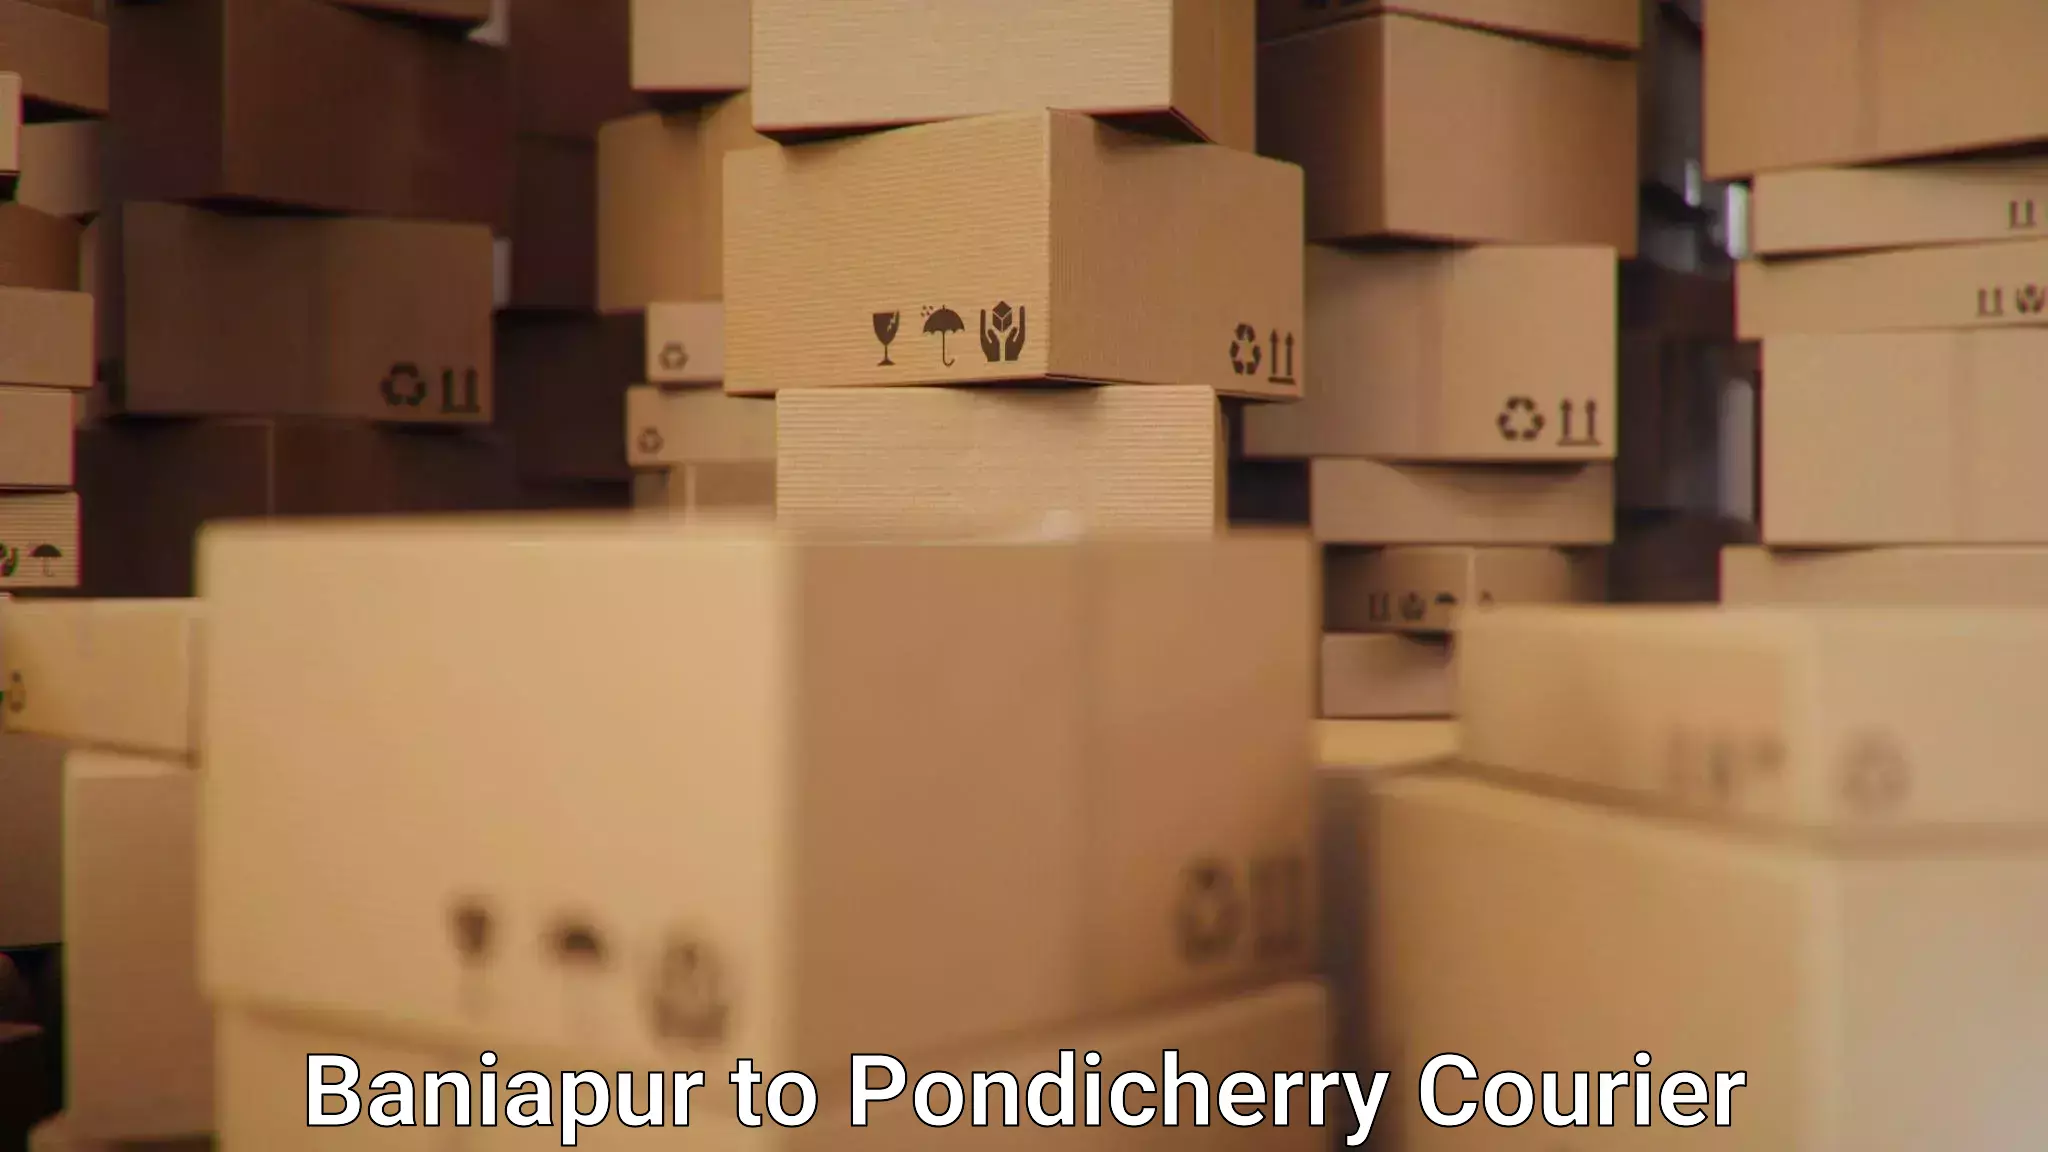 Next-day freight services Baniapur to Pondicherry University